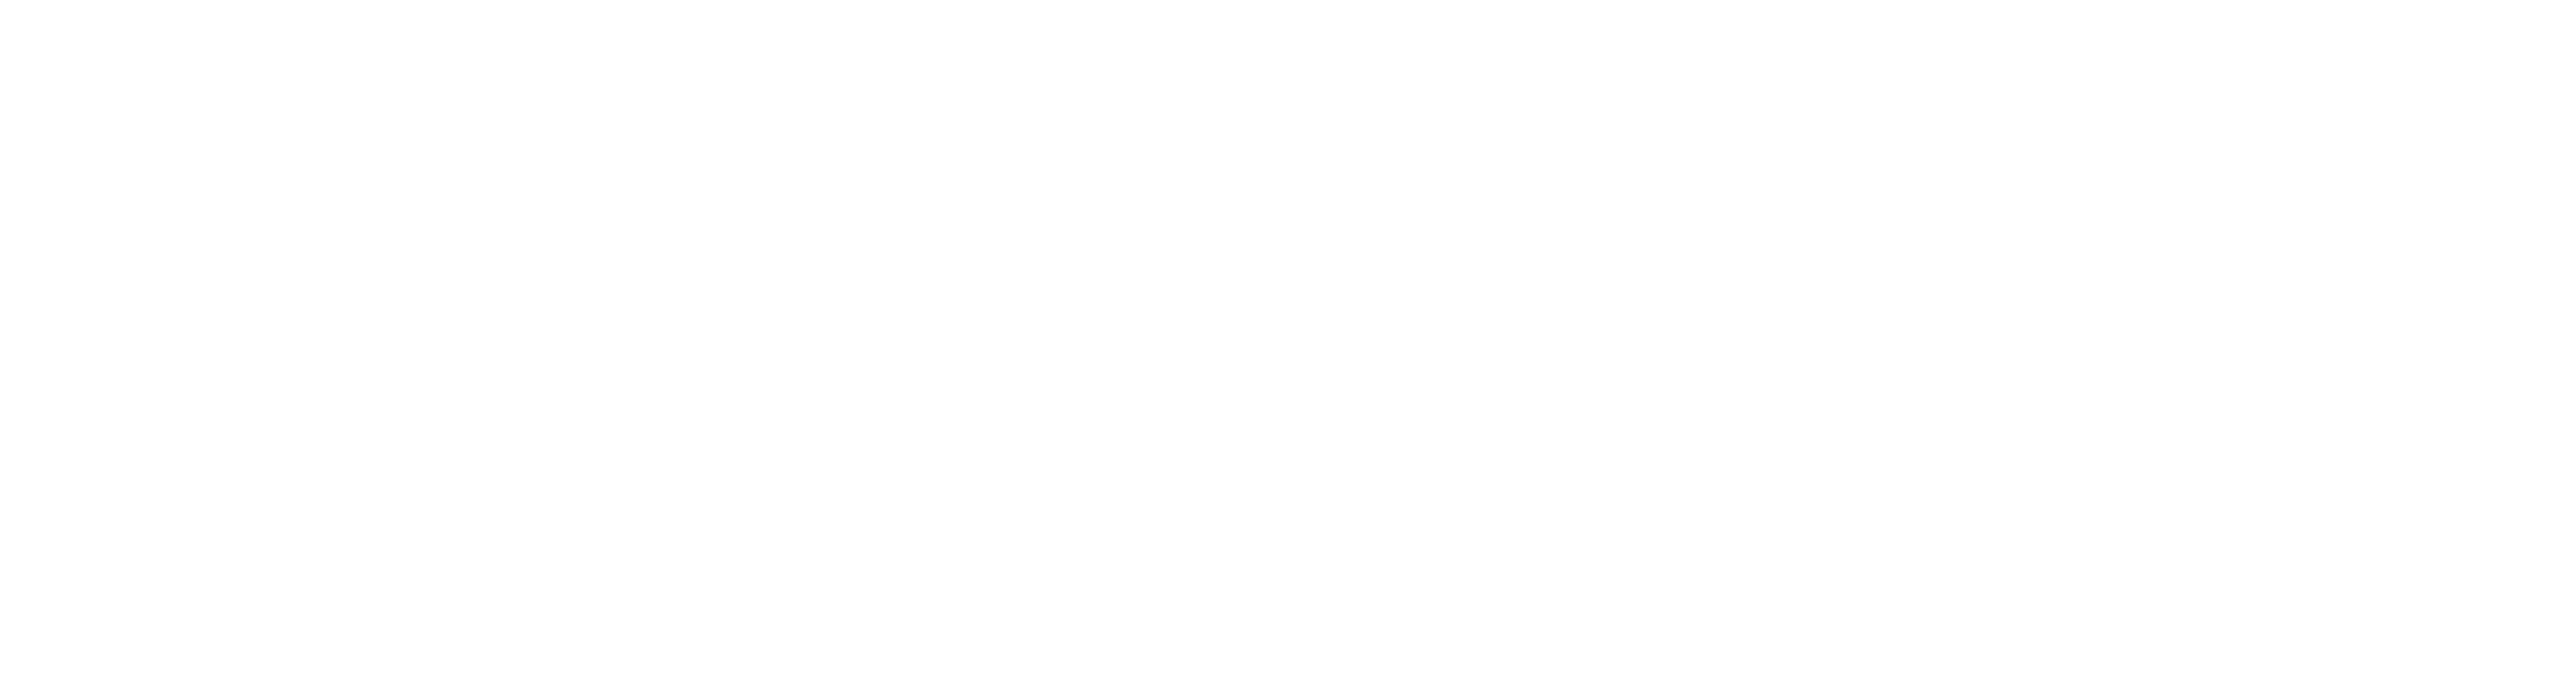 House of Christmas